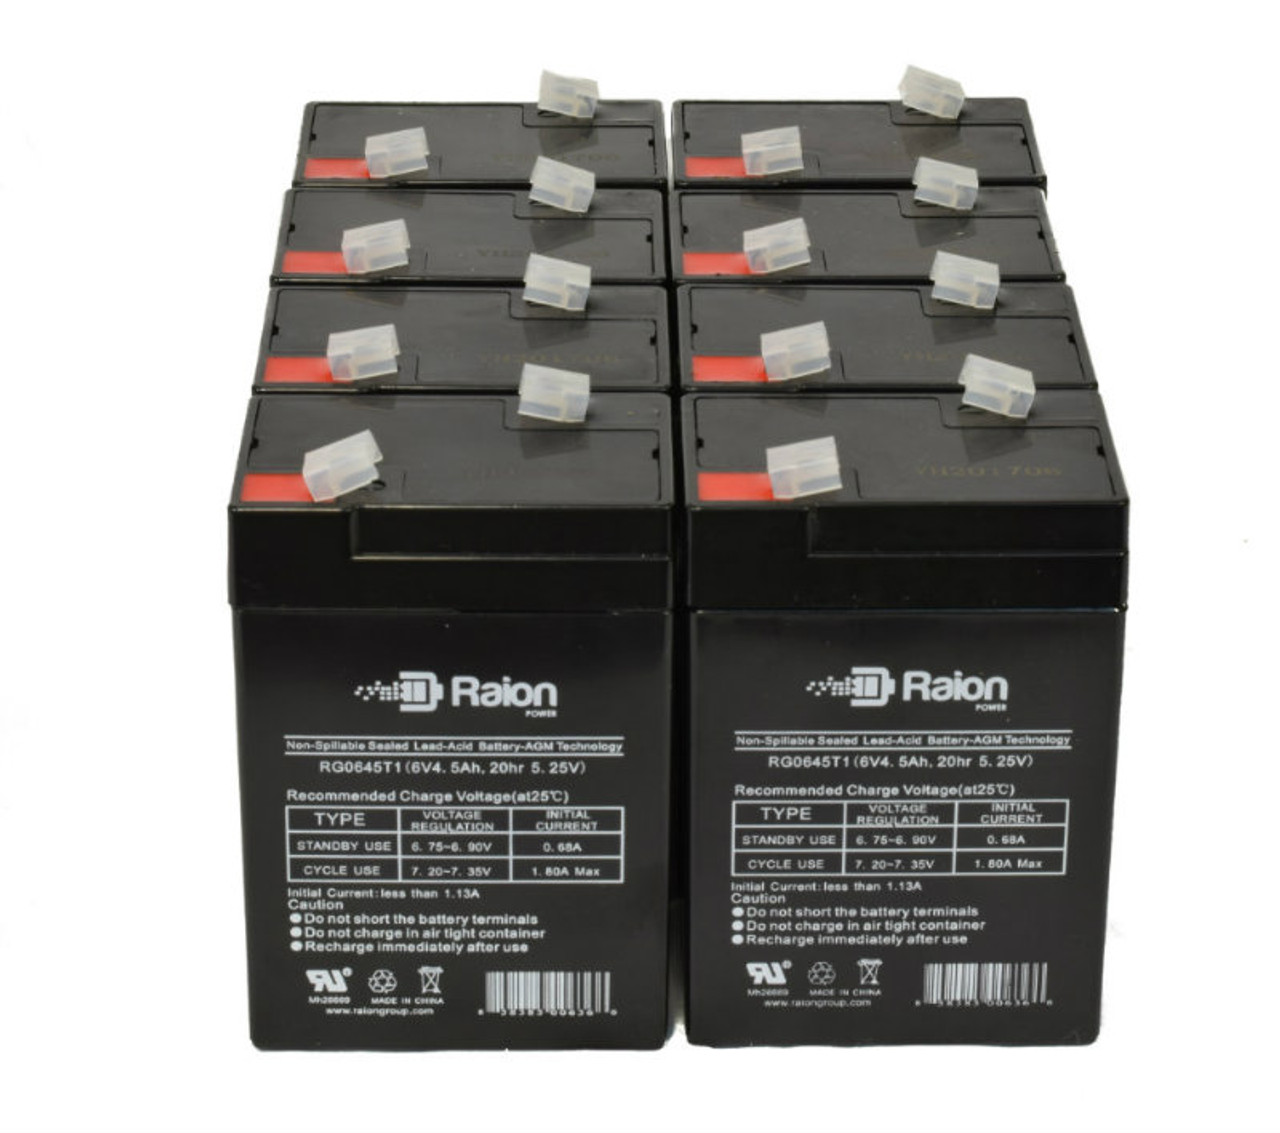 Raion Power 6 Volt 4.5Ah RG0645T1 Replacement Battery for Betta Batteries 3-CNFJ-4 - 8 Pack